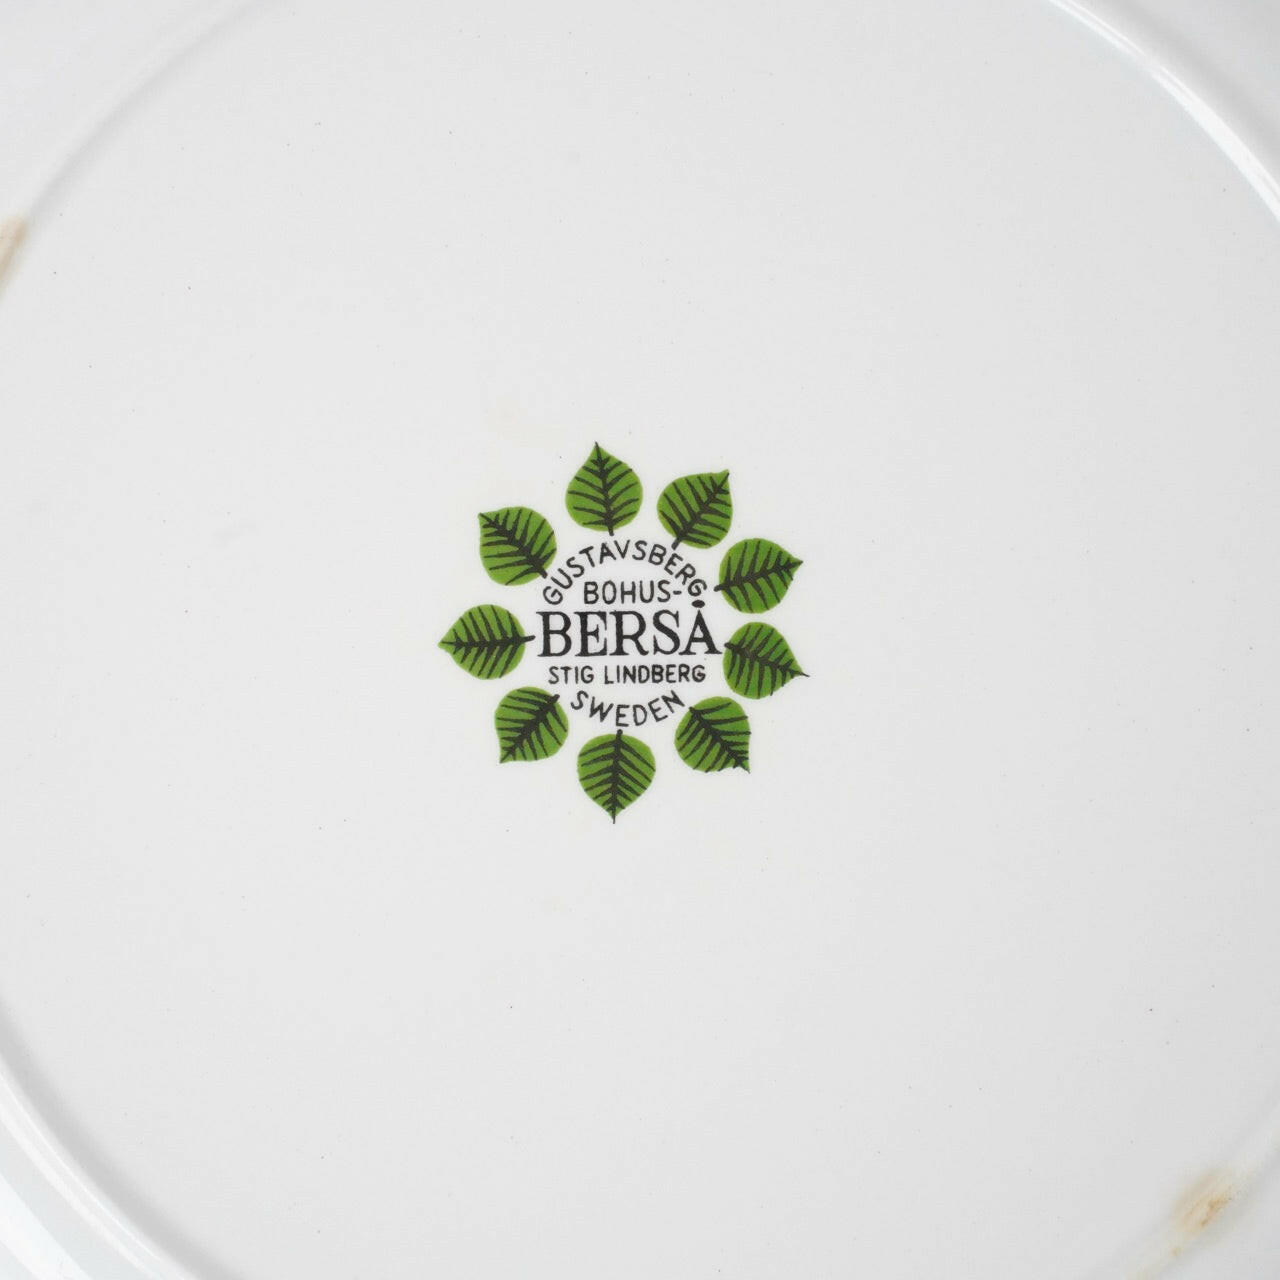 グスタフスベリ ベルサ（Bersa）17.5cmプレート 2 Plates Gustavsberg   